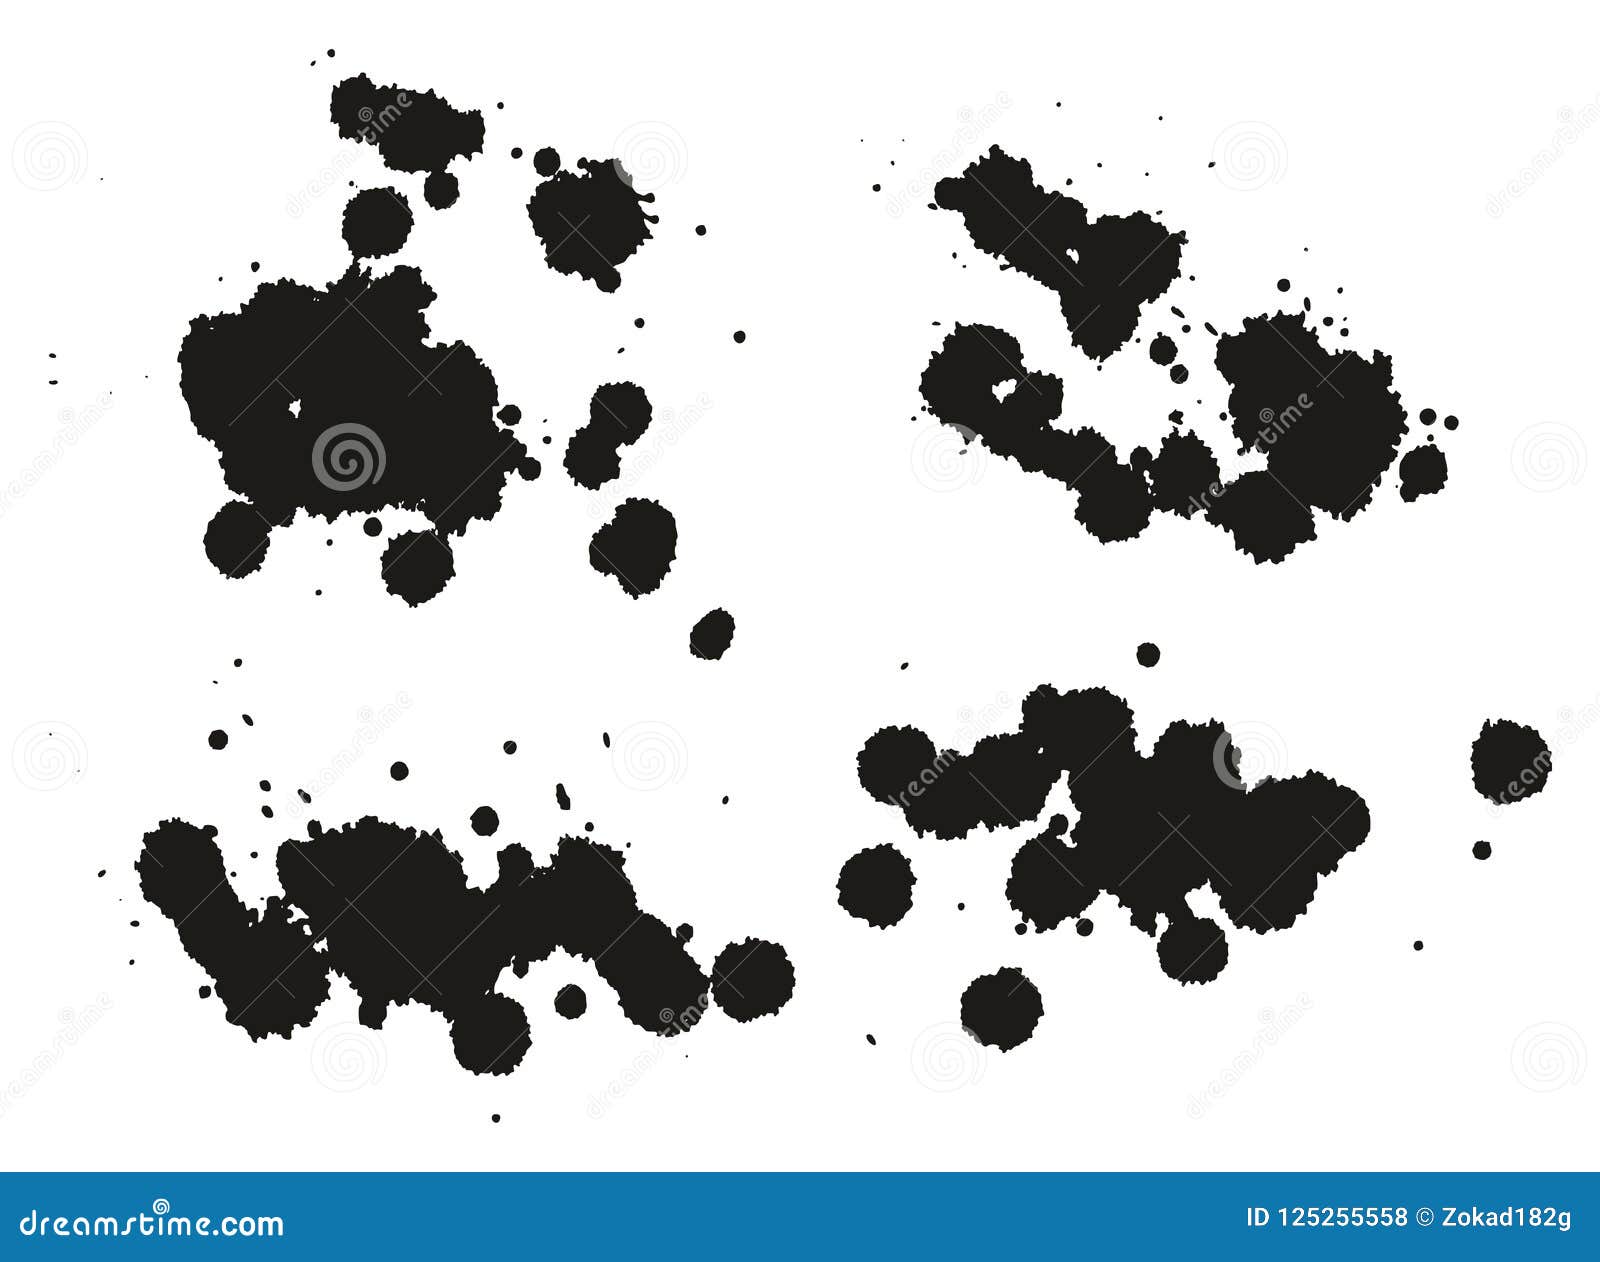 Paint Splatter Dots, Splashes & Backgrounds Set 06 Stock Vector ...